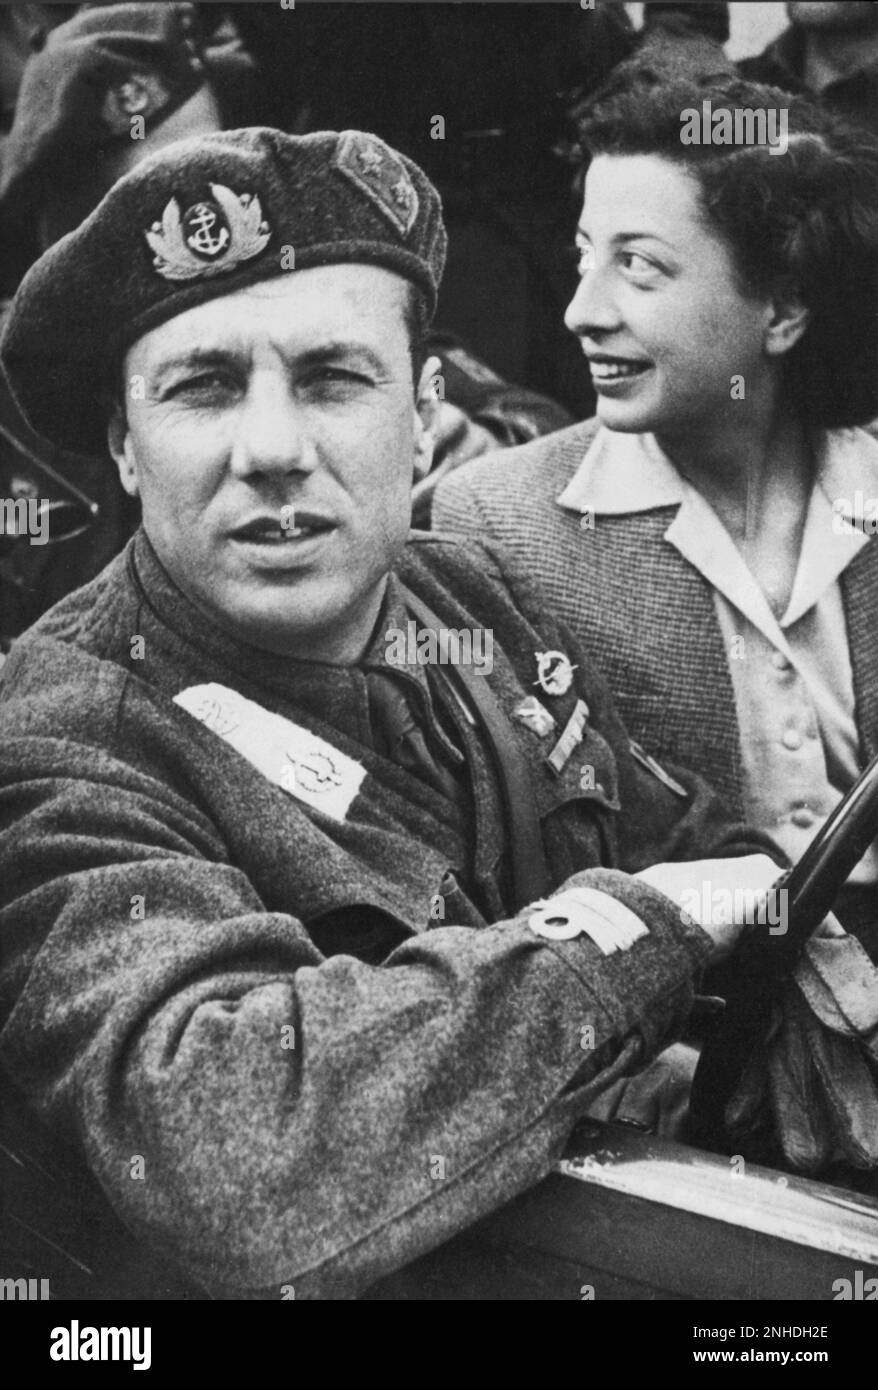 1944 , april , Italy : The prince JUNIO VALERIO BORGHESE ( Roma 1906 - Càdice , Spagna 1974 ) with Luigia Bardelli , wife of Comandant Bardelli of Battaglione BARBARIGO  - FASCISMO - FASCIST - FASCISTA - FASCISM - WW II - World War 2nd - SECONDA GUERRA MONDIALE - X MAS - paracadutisti - parà - marò -  REPUBBLICA SOCIALE di Salò - nobiltà italiana - nobili italiani - nobility - DECIMA MAS  ----  Archivio GBB Stock Photo